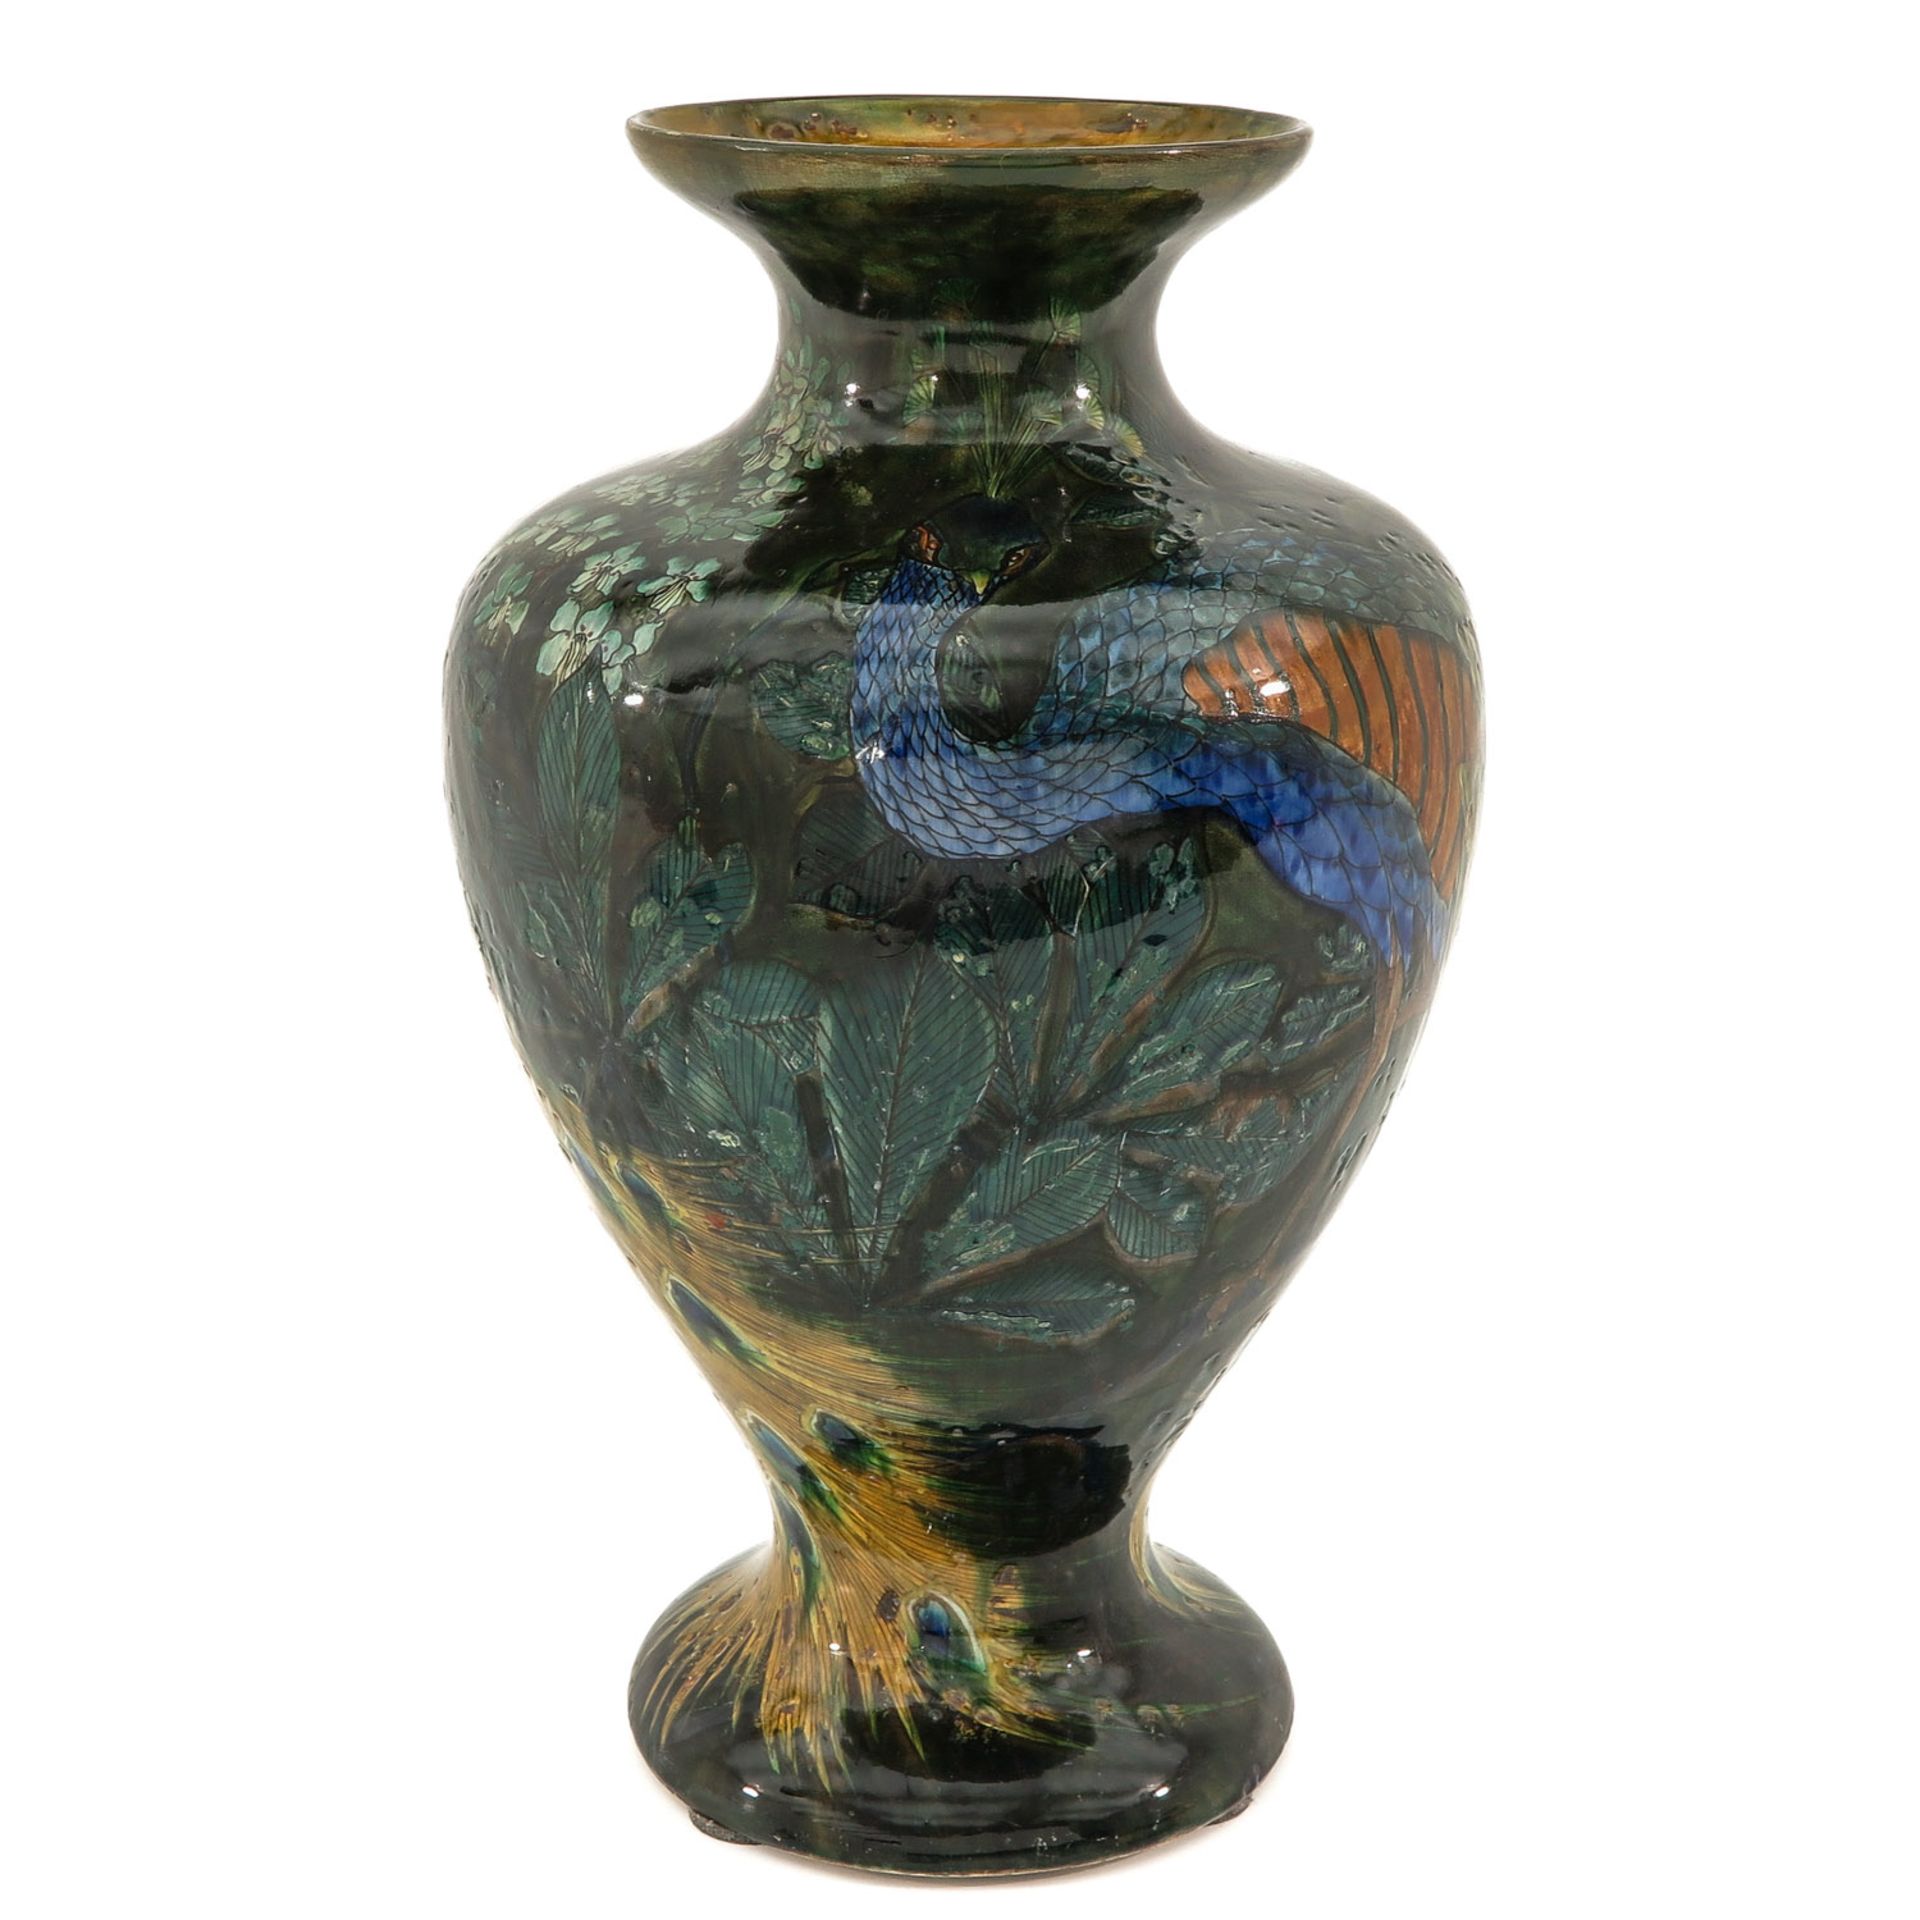 A Rozenburg Den Haag Vase